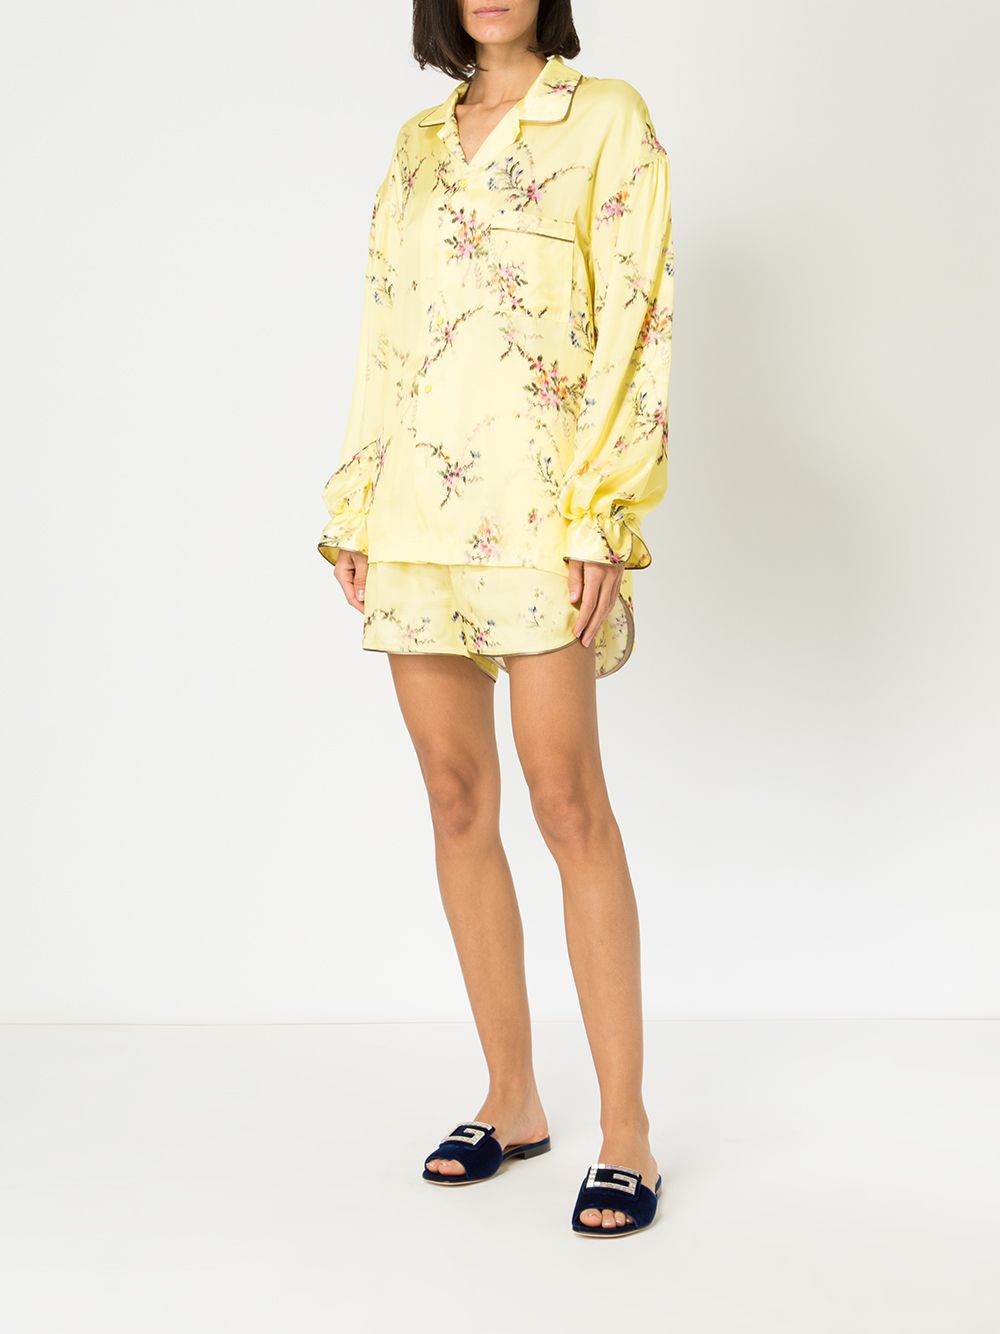 фото Preen by thornton bregazzi пижамная рубашка с цветочным принтом